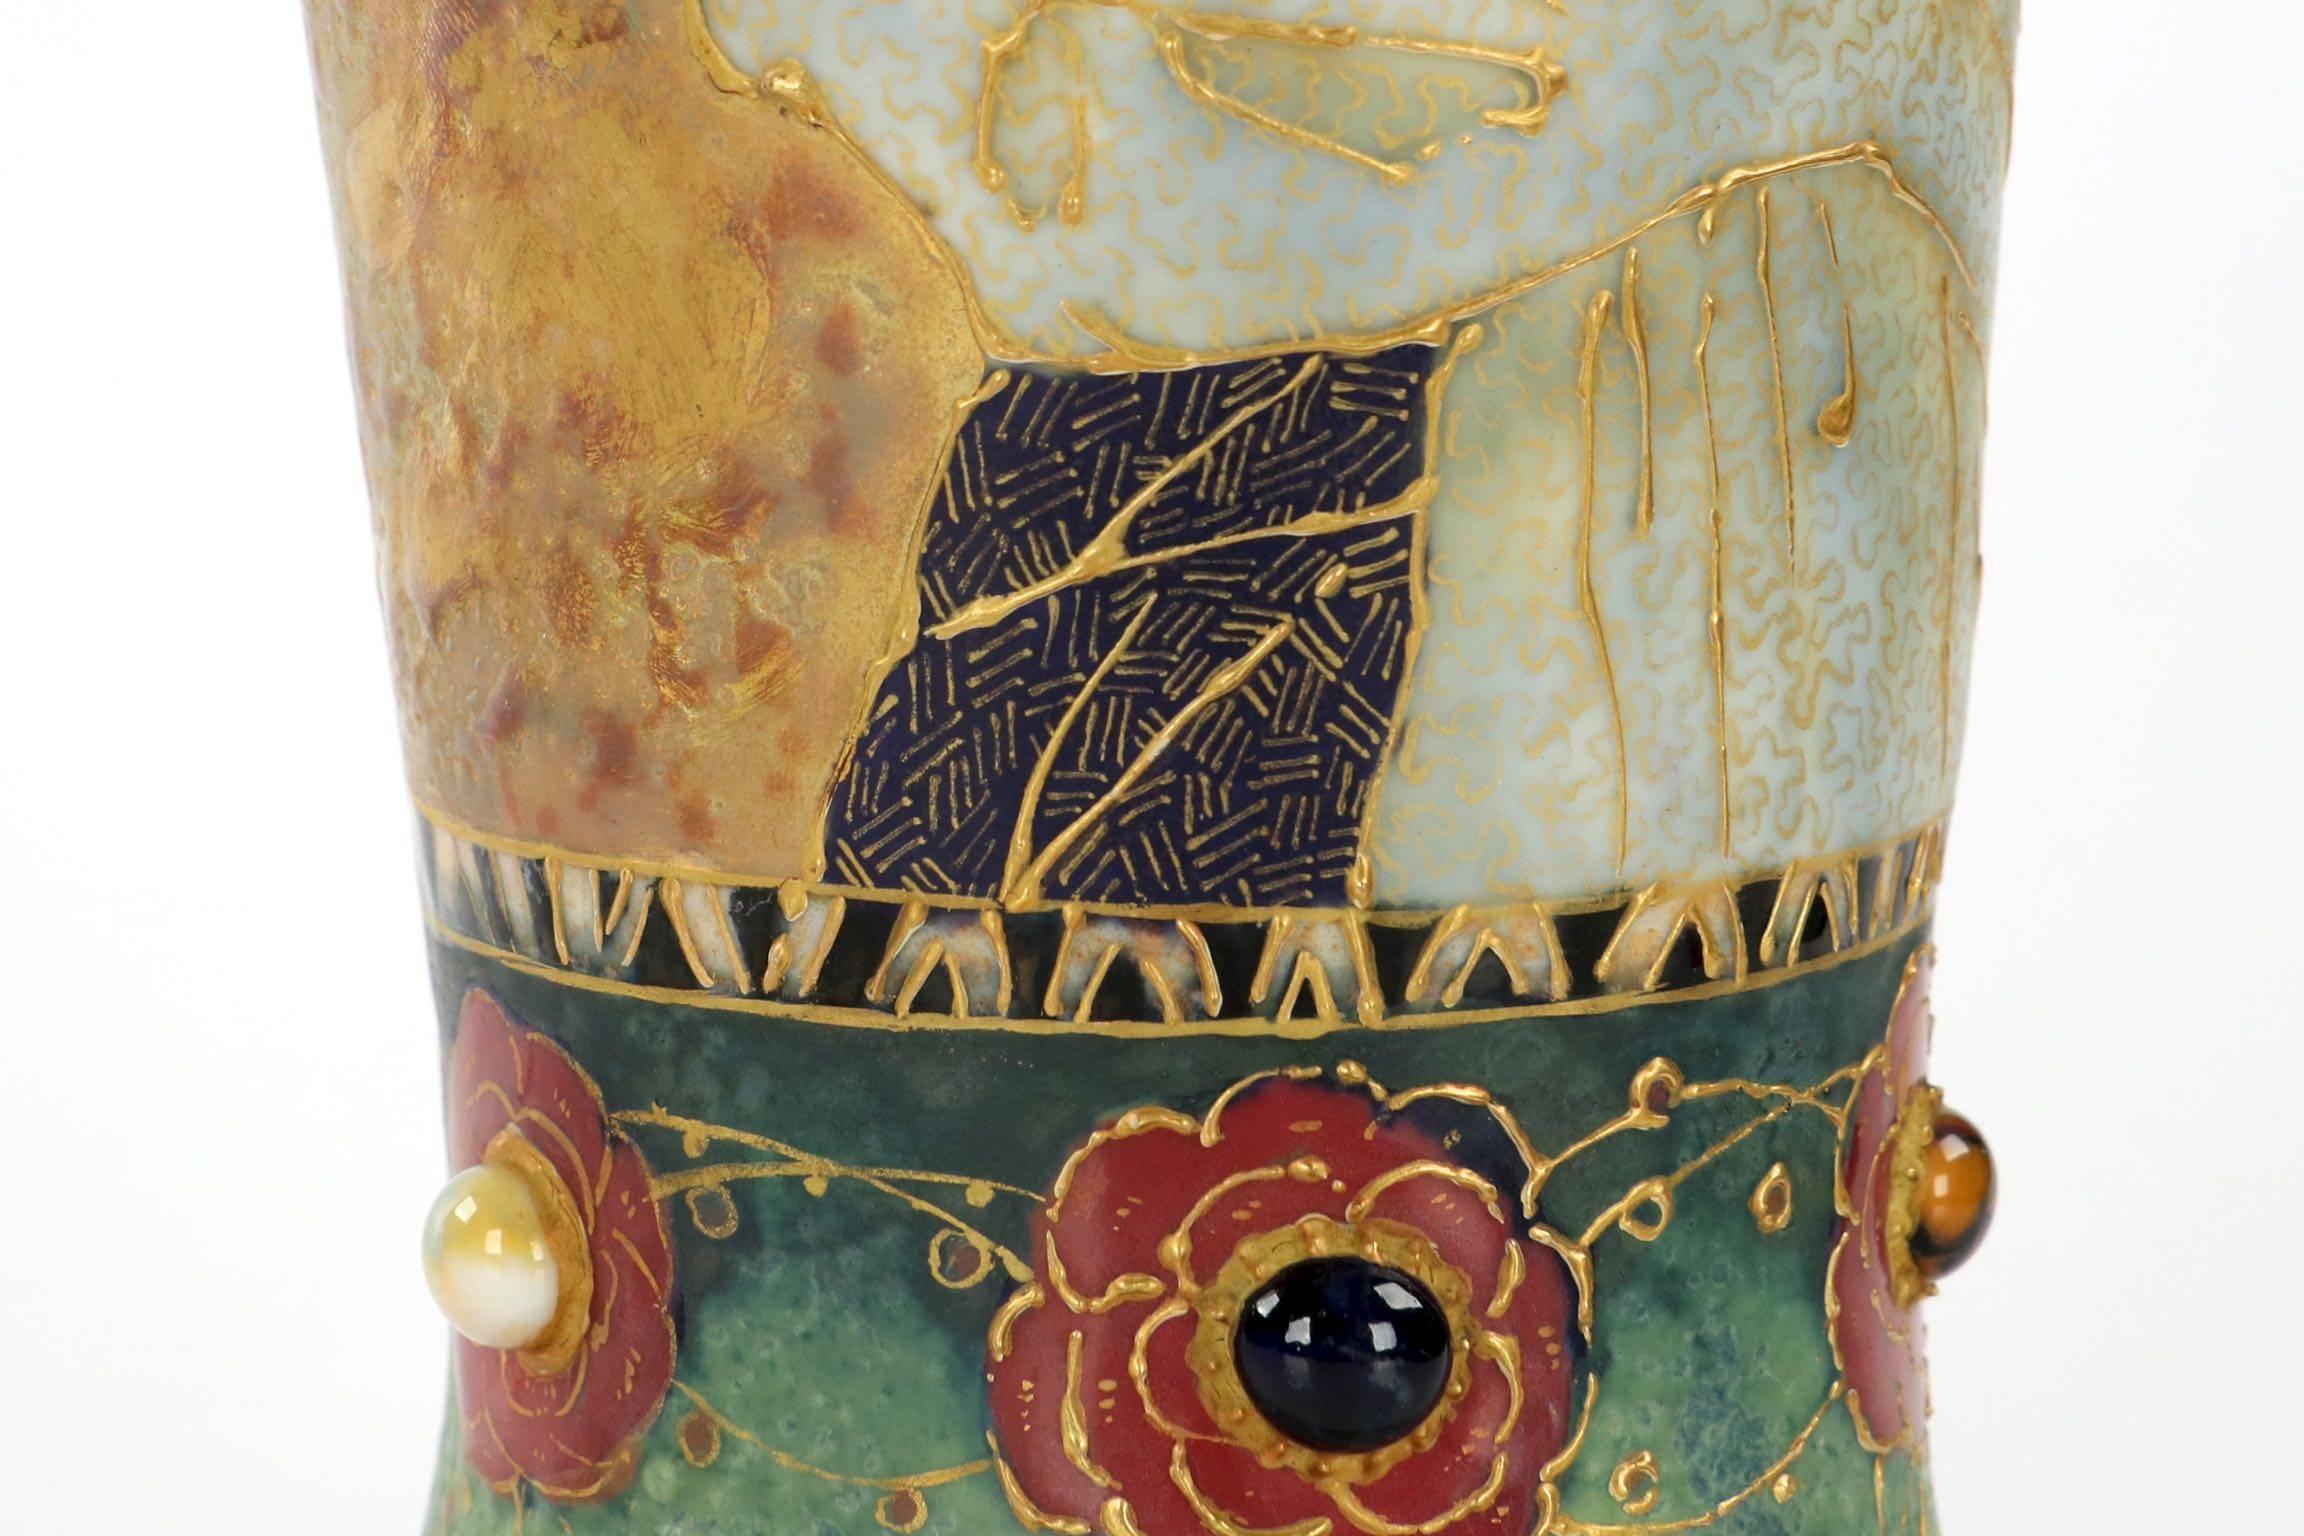 Early 20th Century Fine Art Nouveau Amphora Rstk Fairy Tale Princess Portrait Vase, circa 1904-1905